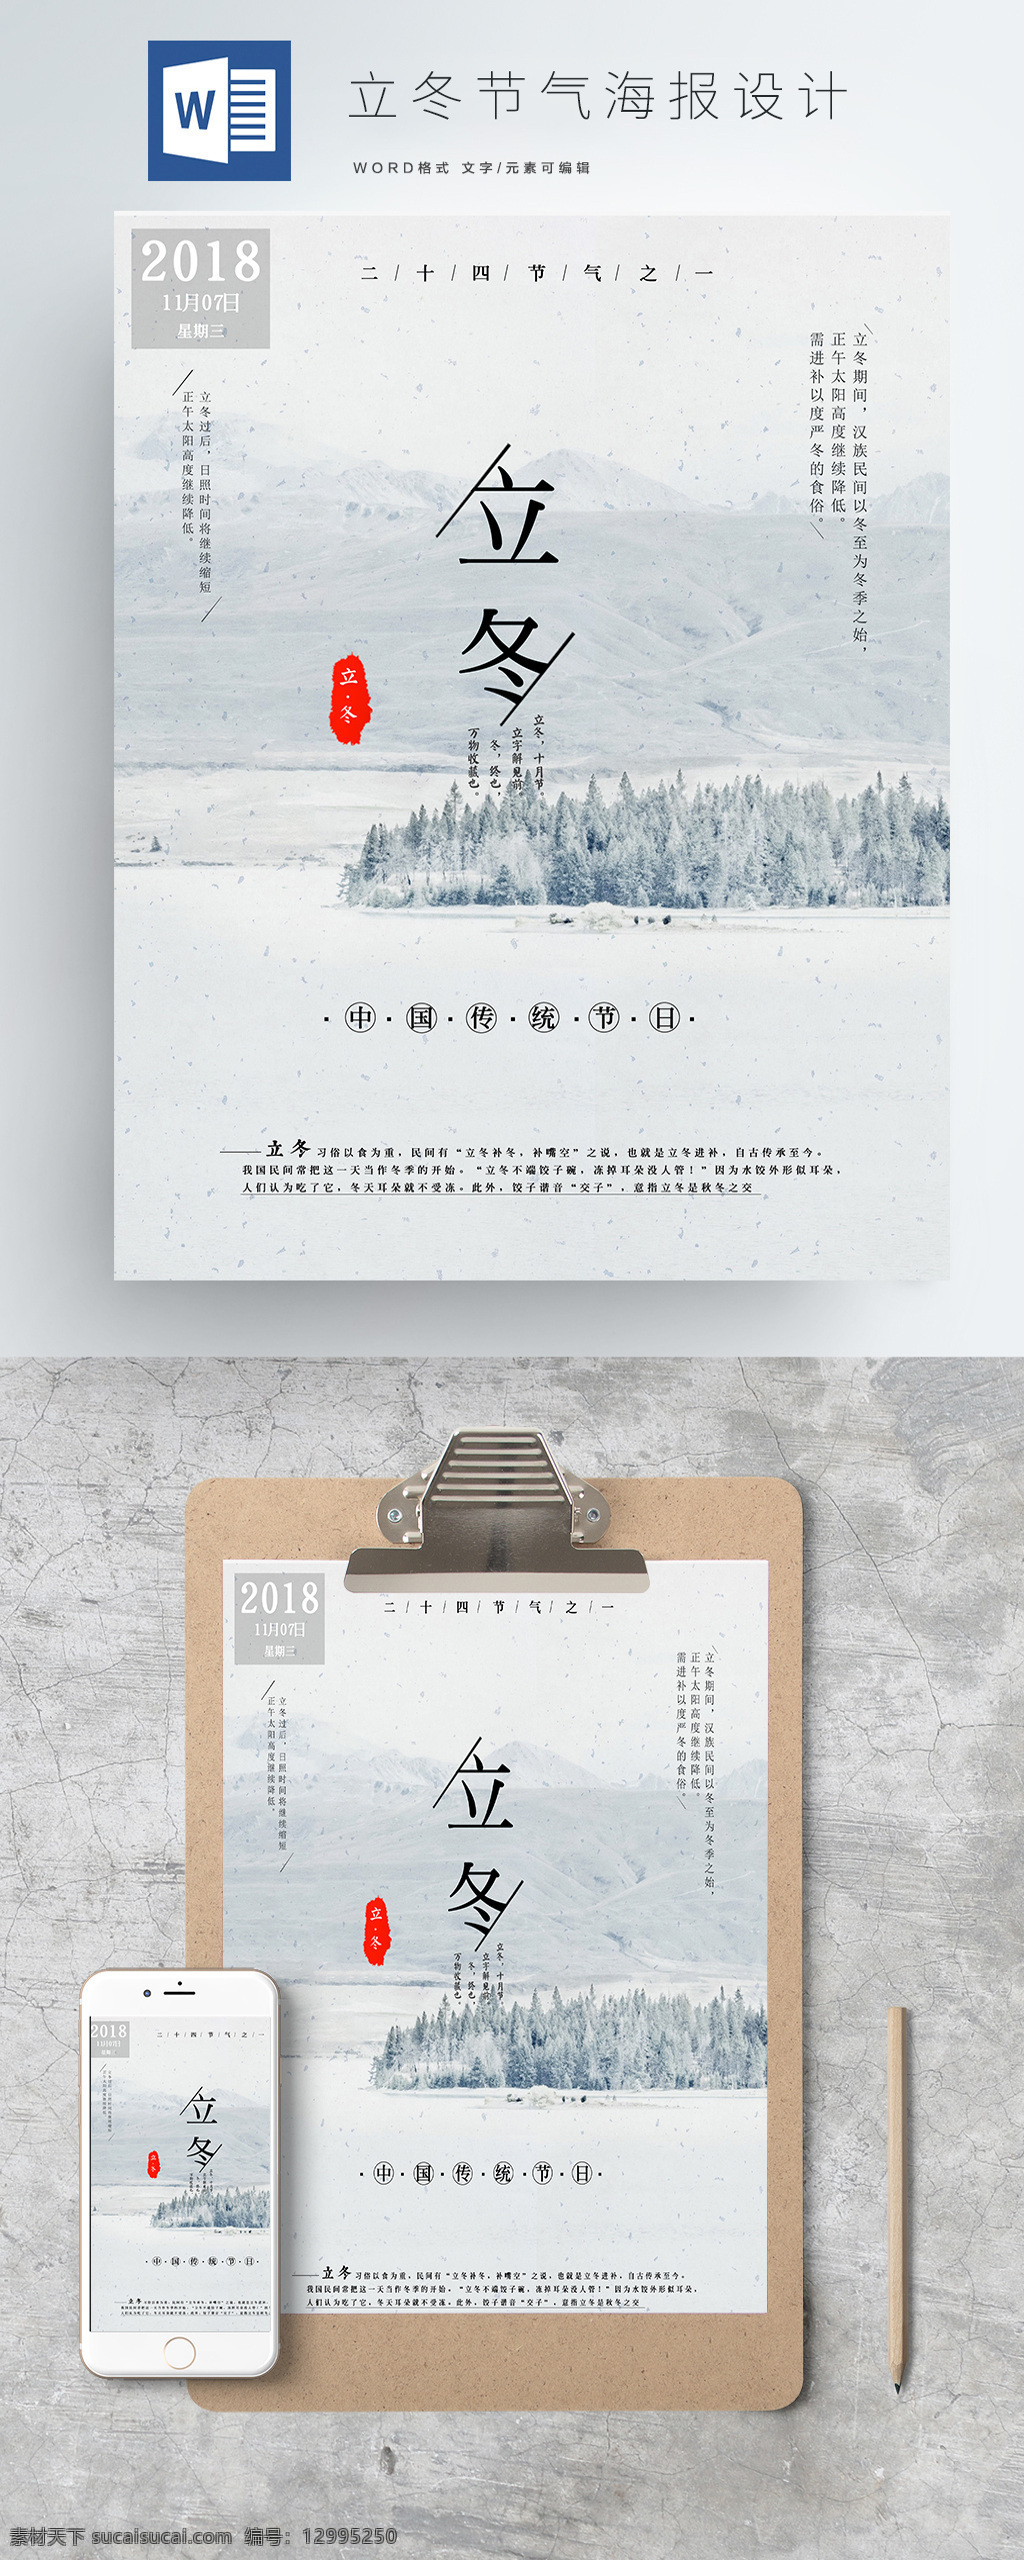 立冬 节气 word 海报 模板 中国传统节日